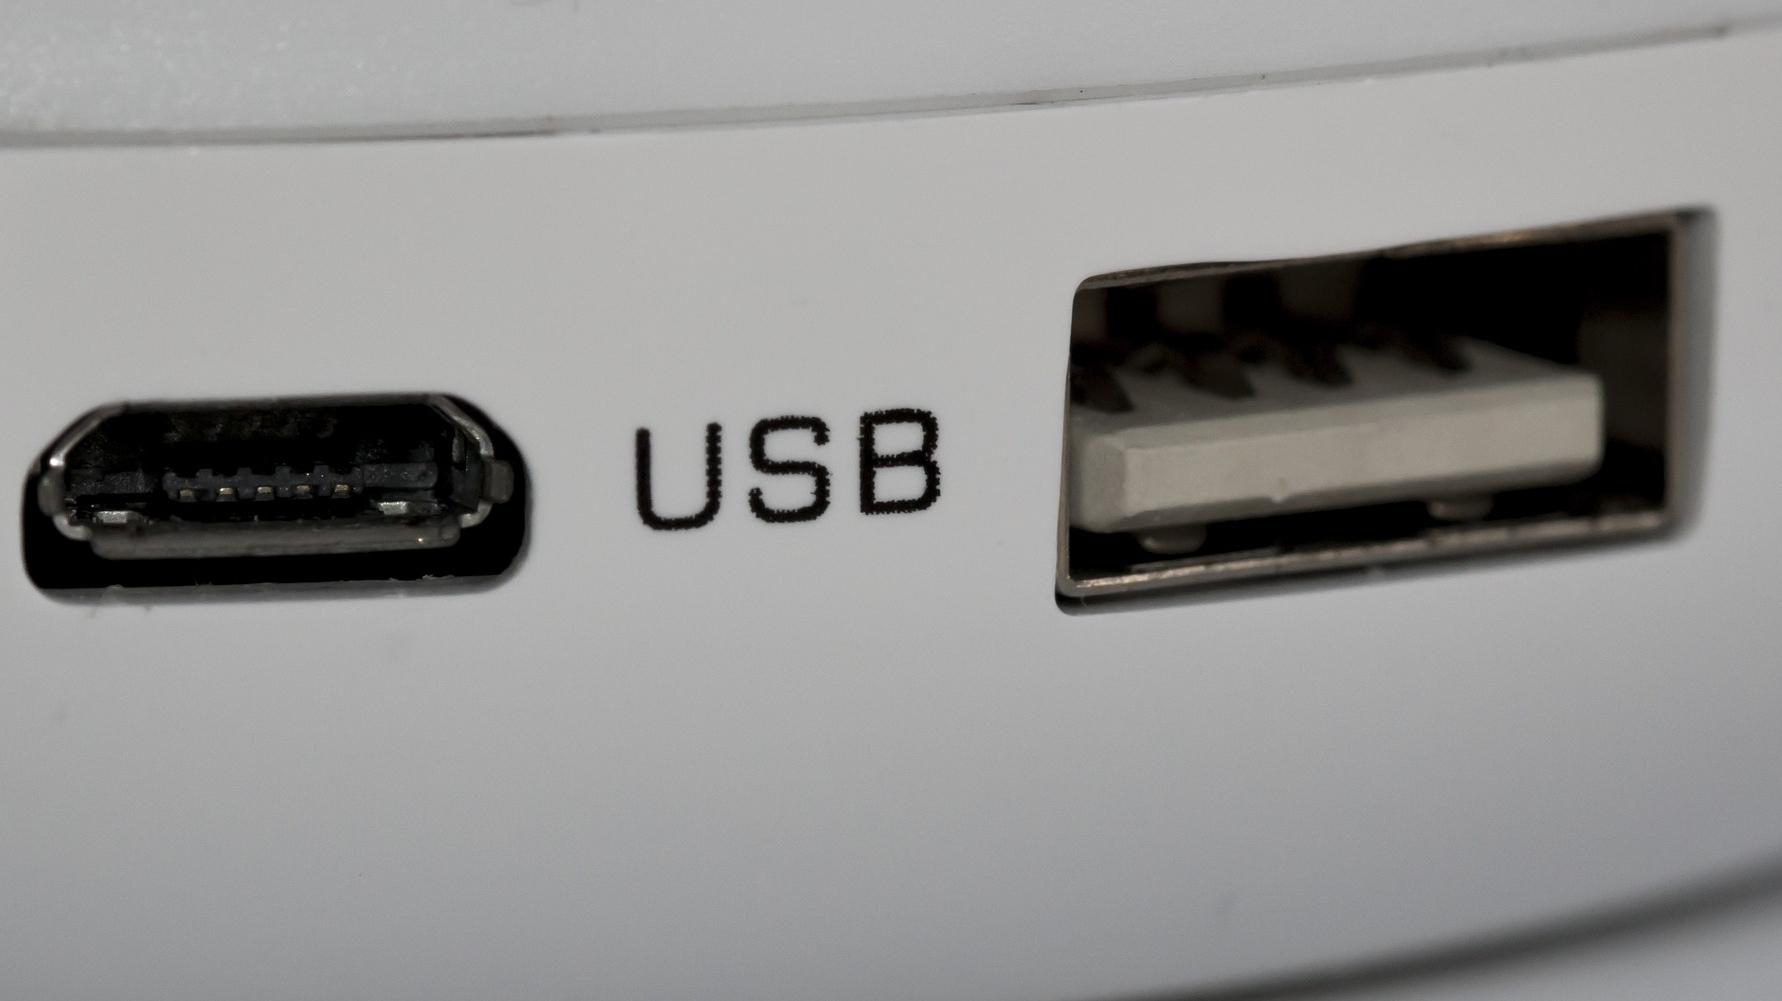 Überprüfen Sie zunächst, ob das USB-Kabel ordnungsgemäß mit dem USB-Anschluss verbunden ist.
Testen Sie das USB-Massenspeichergerät an einem anderen USB-Anschluss an Ihrem Computer.